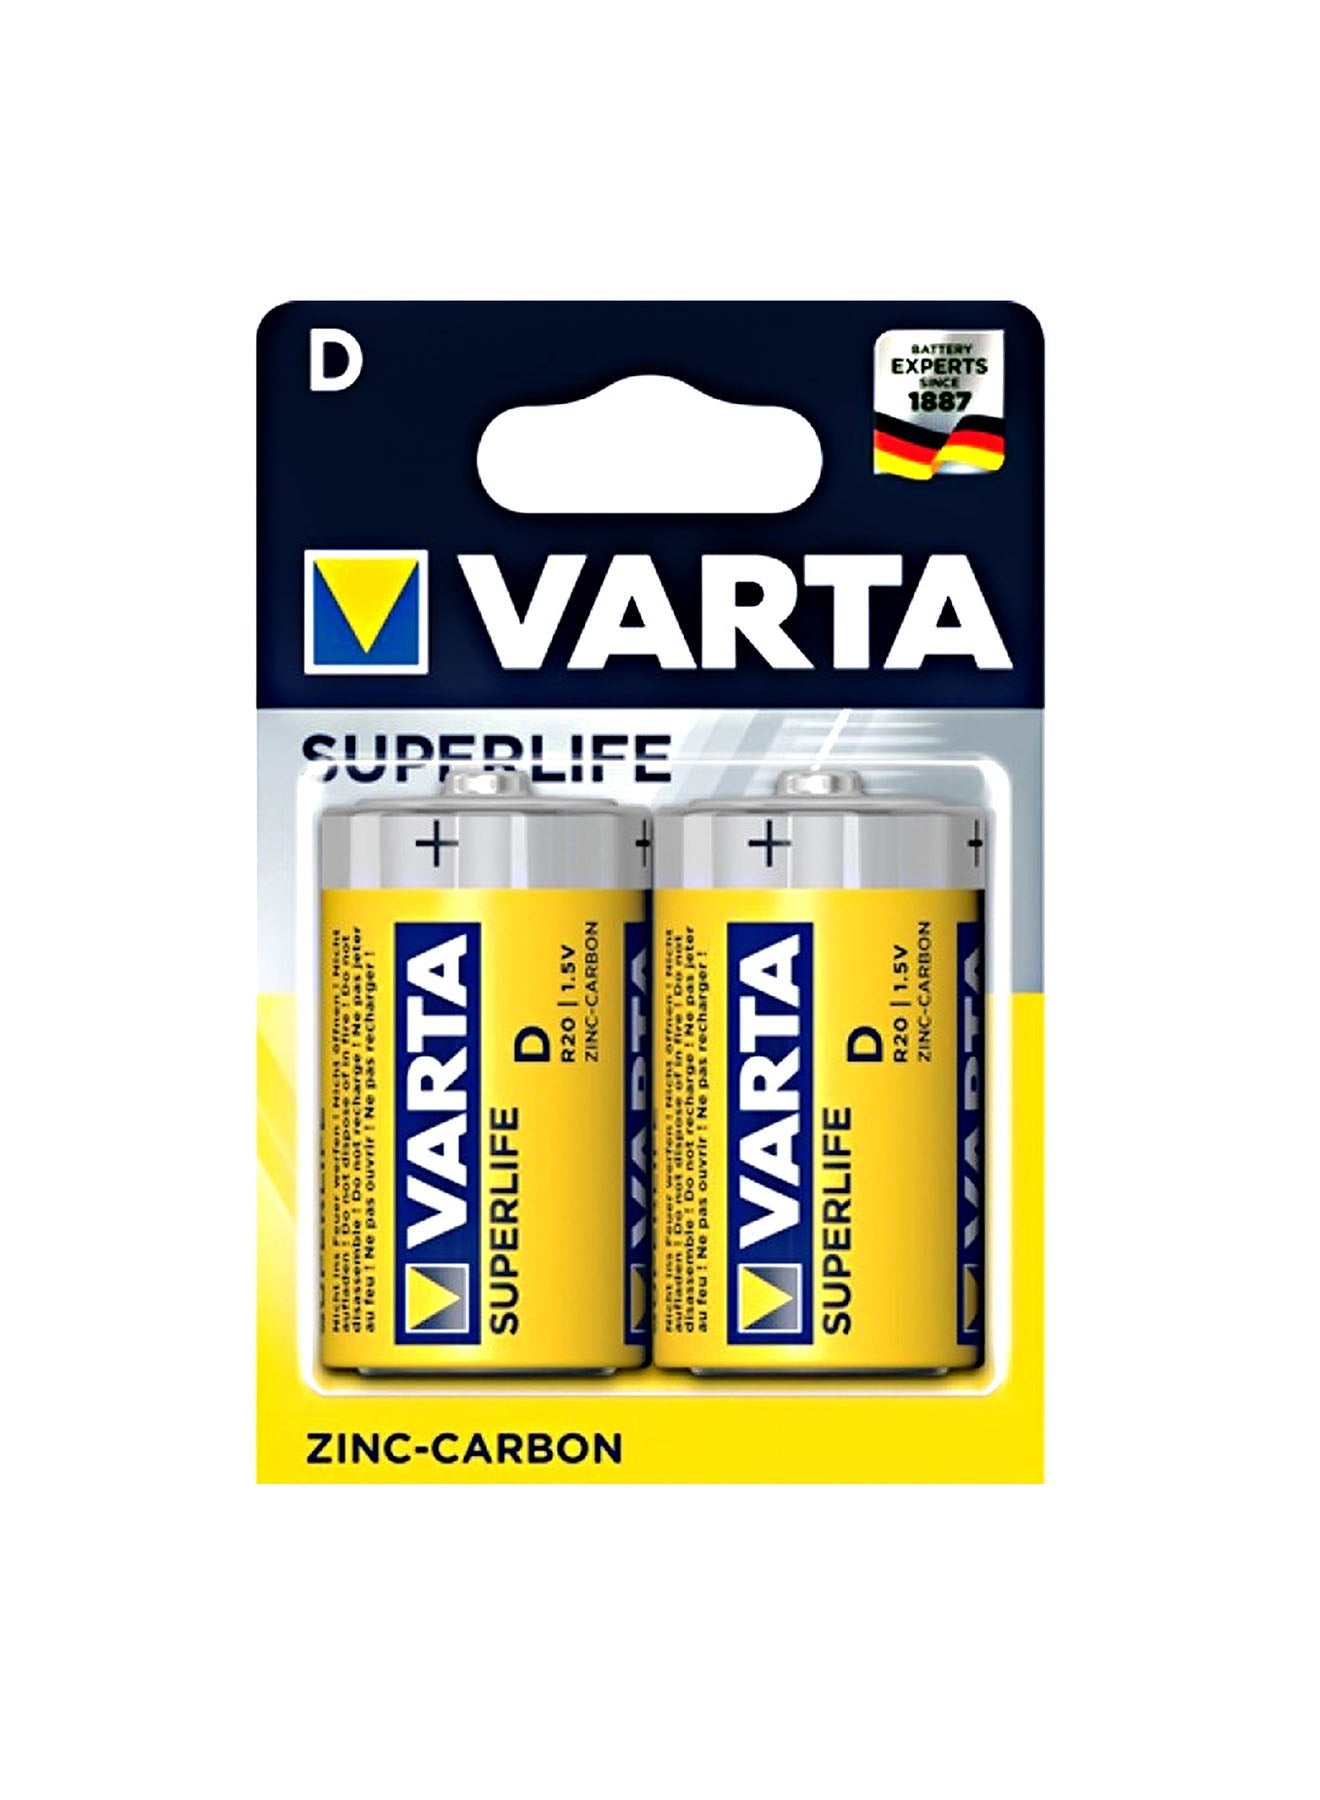 Varta Superlife R20D Battery 2 Unit Value Pack of 2 